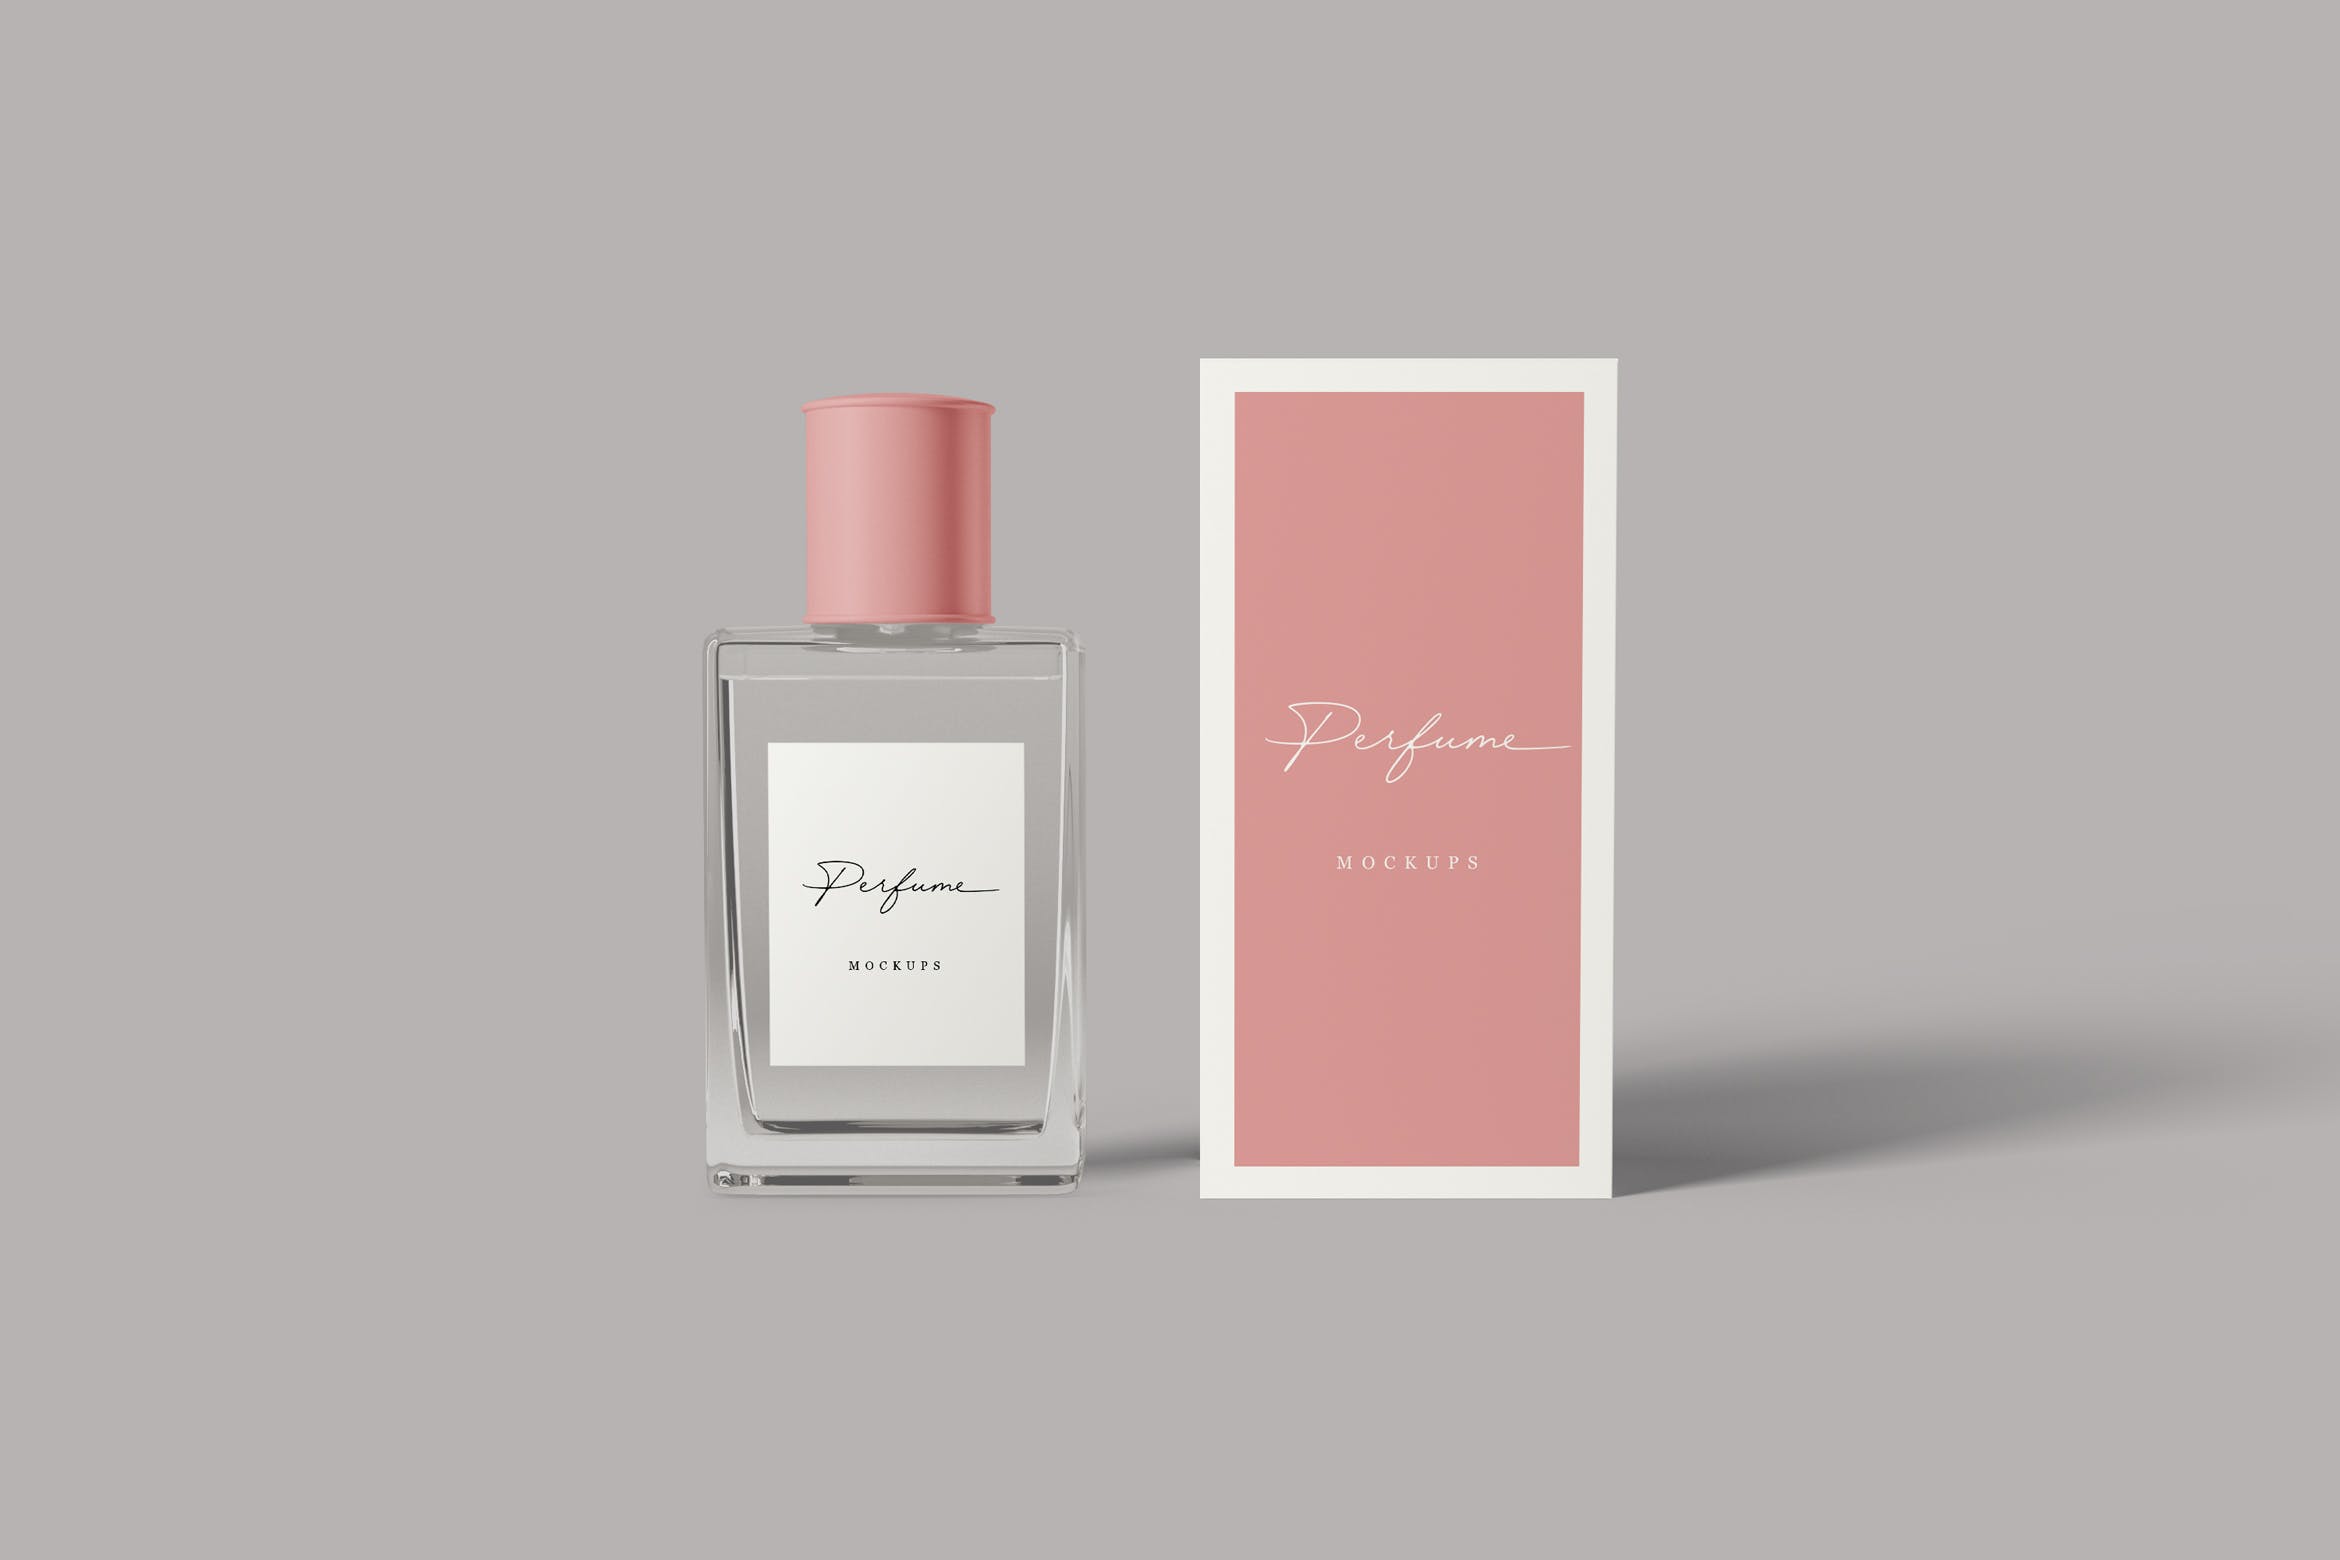 香水瓶外观设计图16设计网精选 Perfume Mockups插图